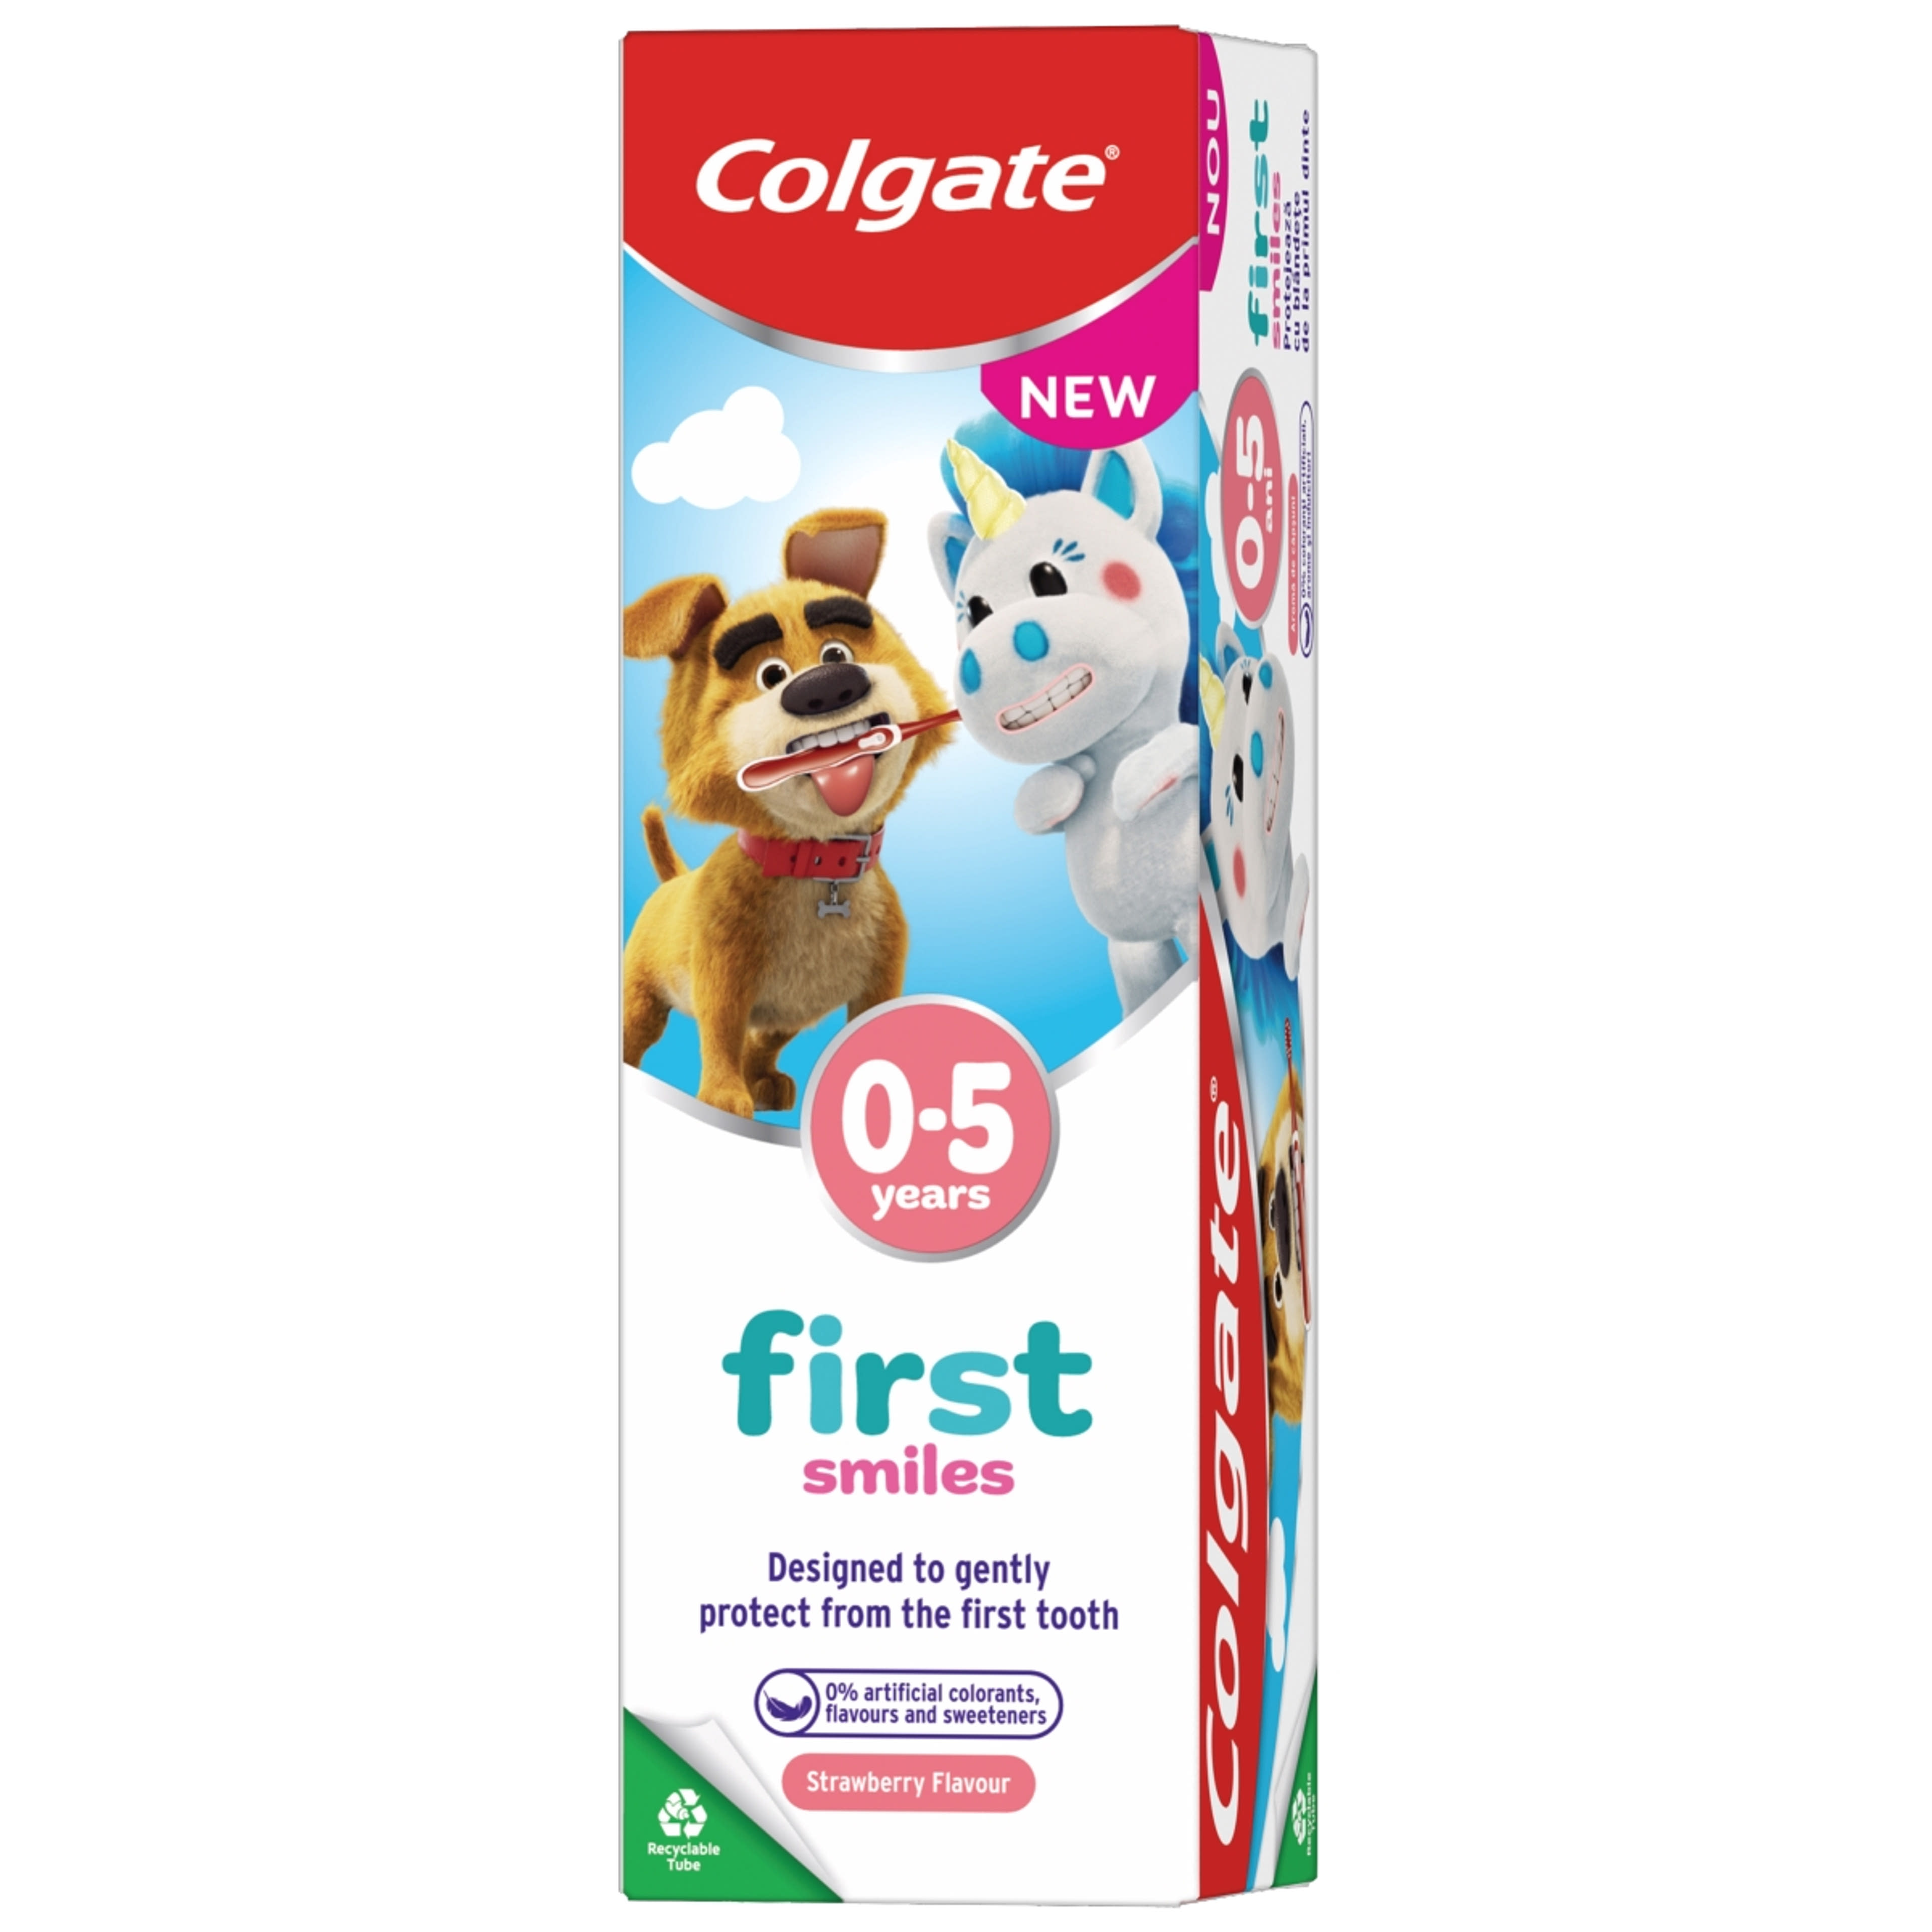 Colgate First Smiles fogkrém gyermekeknek 0-5 éves korig - 50 ml-2